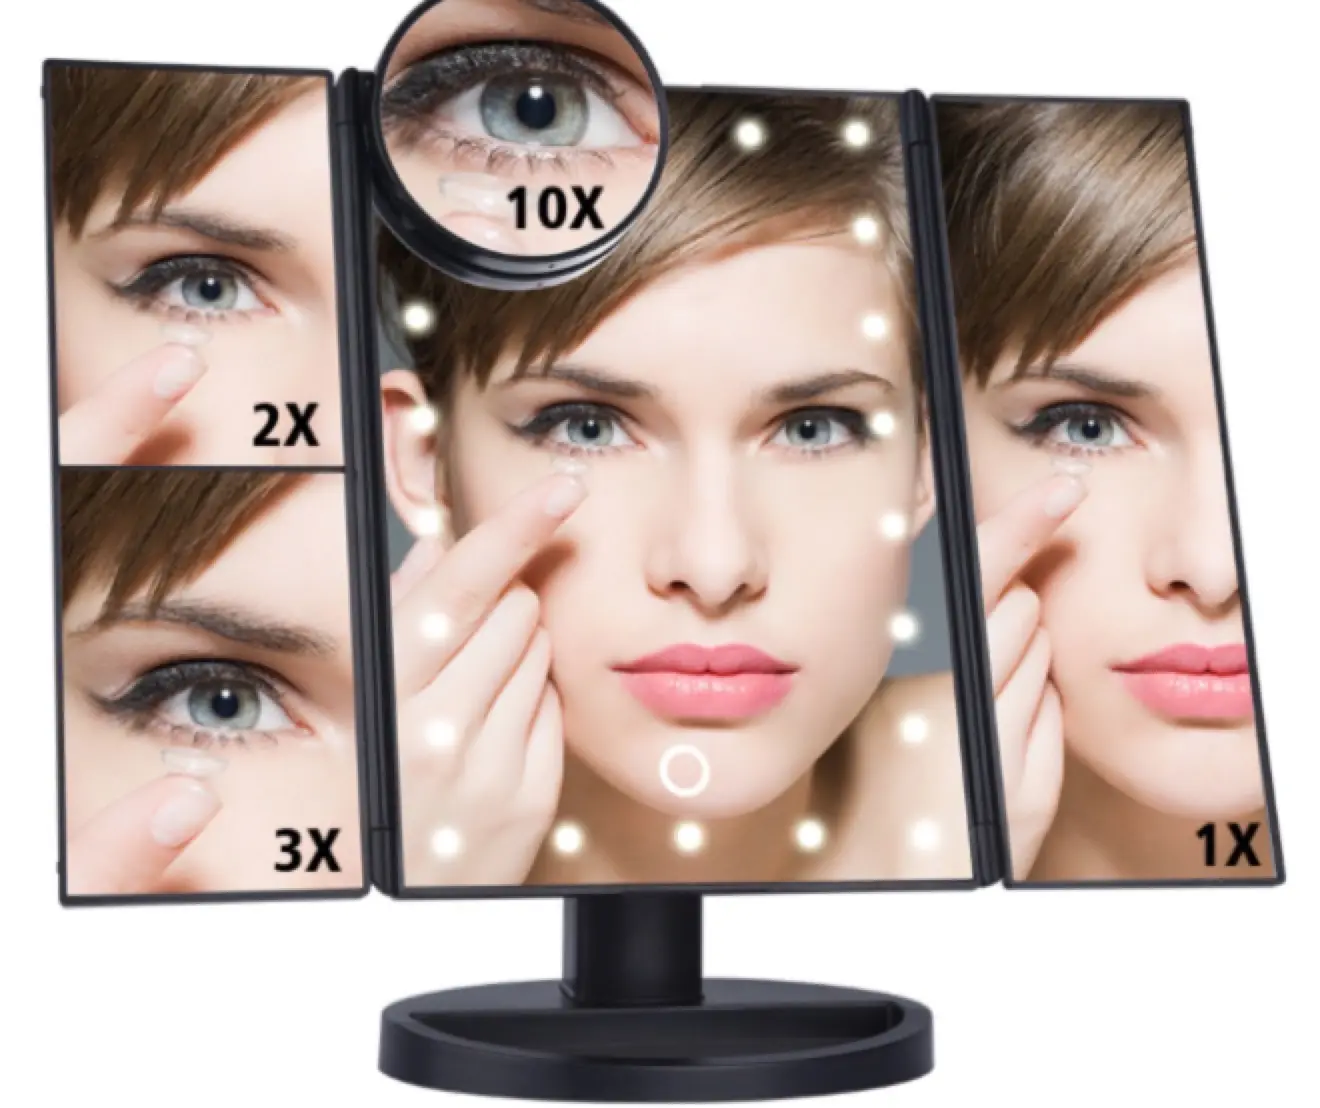 Hollywood 10x 2X 3X ingrandimento led illuminato Desktop Ladies rettangolo luminosità Touch Table specchio cosmetico per il trucco